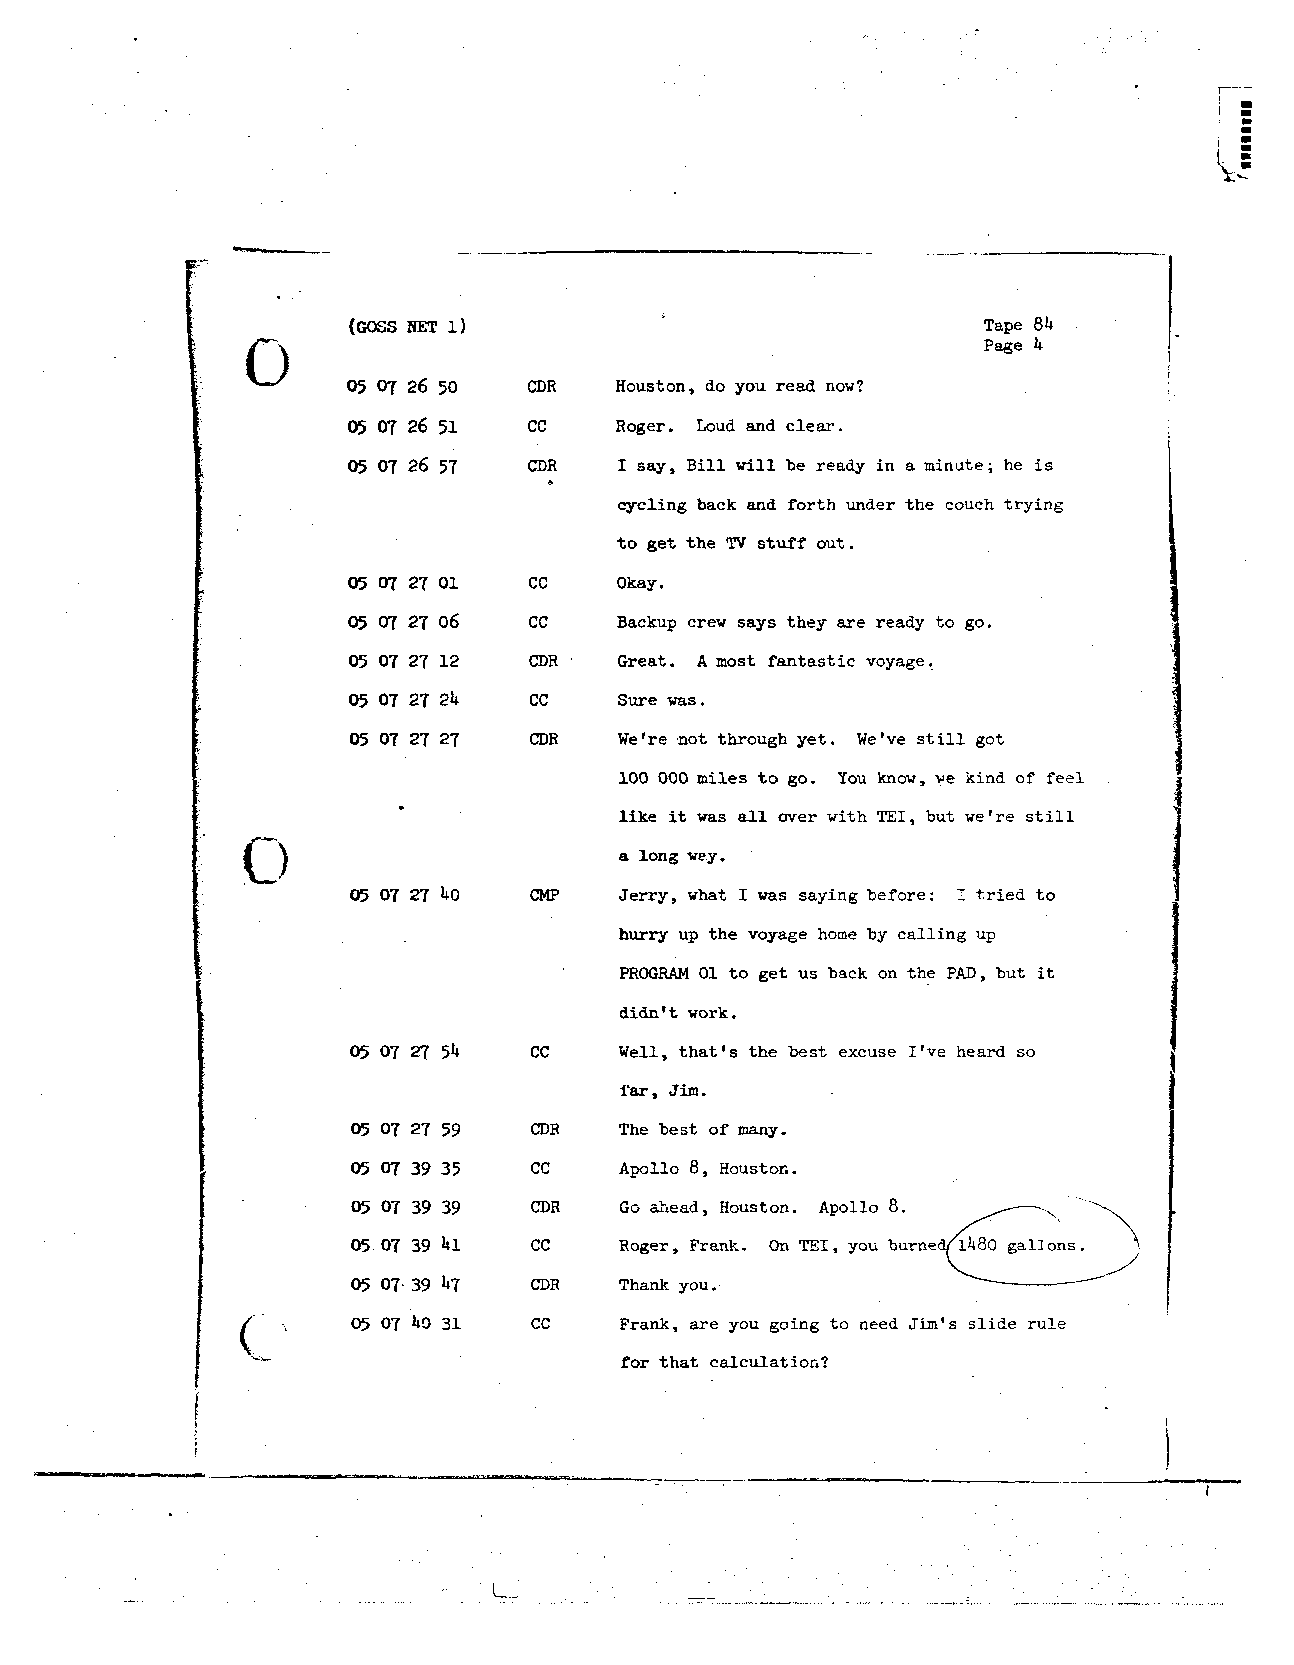 Page 690 of Apollo 8’s original transcript